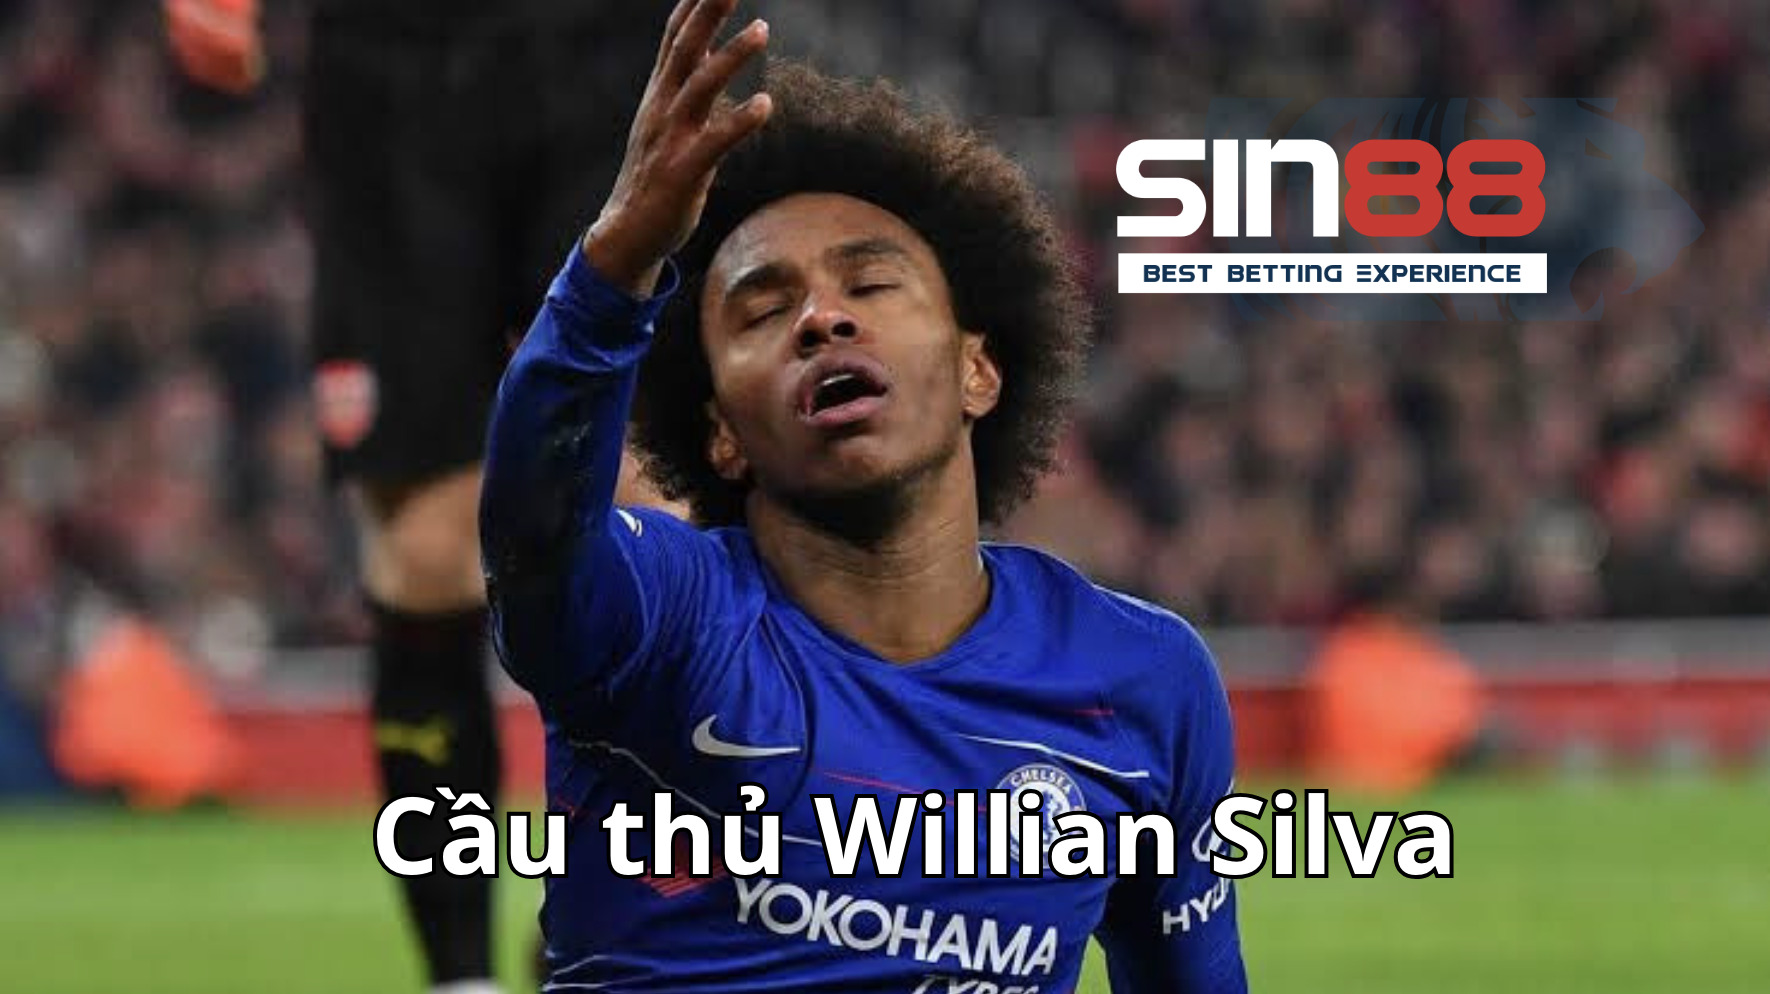 Willian Silva Cầu thủ xuất sắc nhất trong tháng